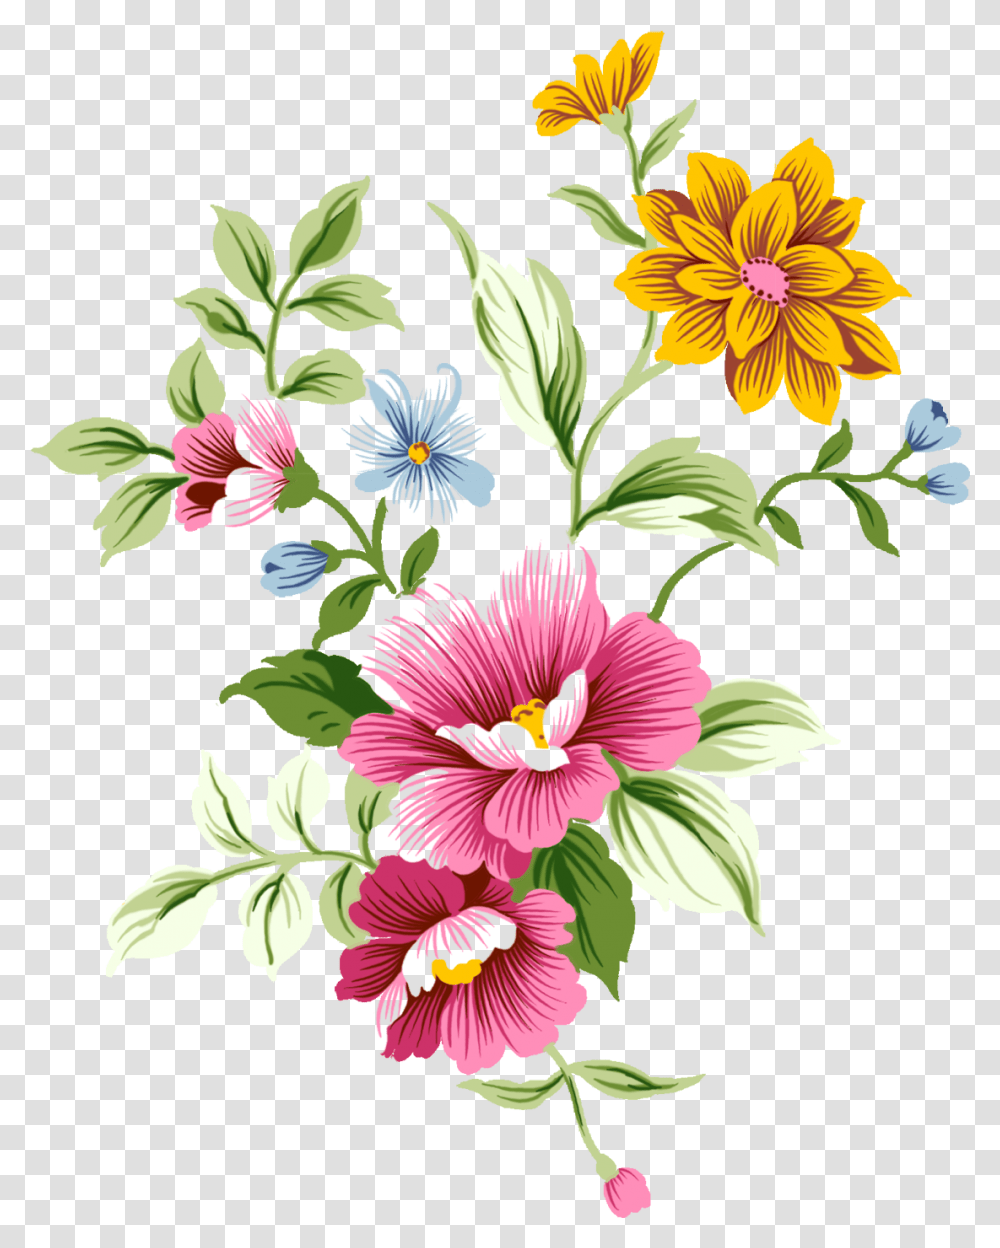 Spring Flower Photo Background Flower Images, Graphics, Art, Floral Design, Pattern Transparent Png